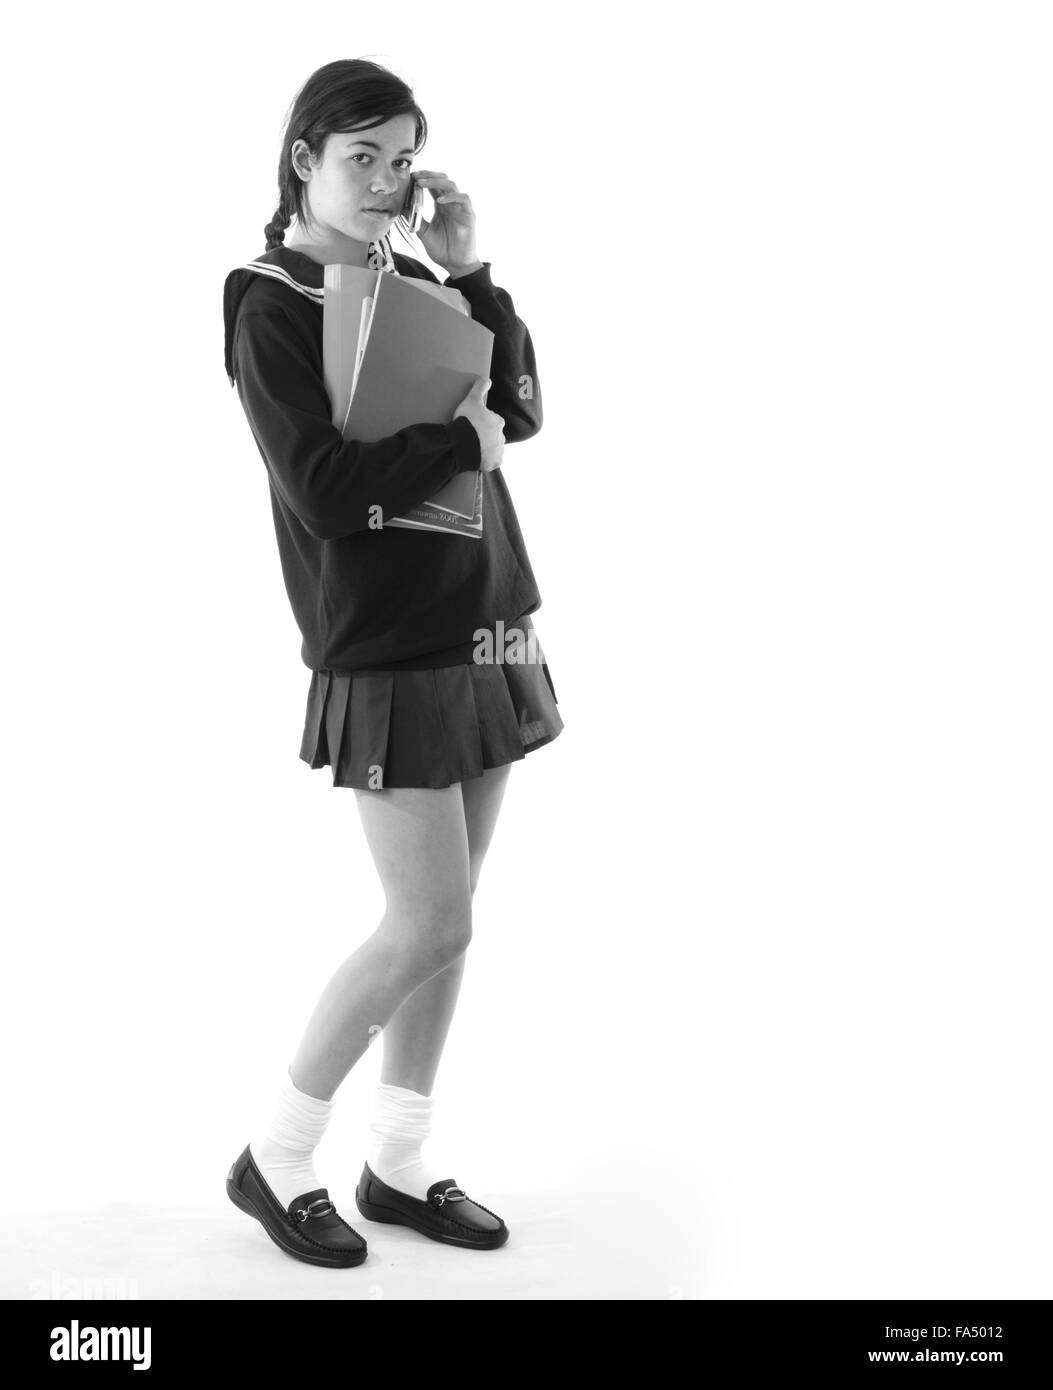 Colegiala en su celular llevando sus libros escolares, vestida con una minifalda muy corta Foto de stock